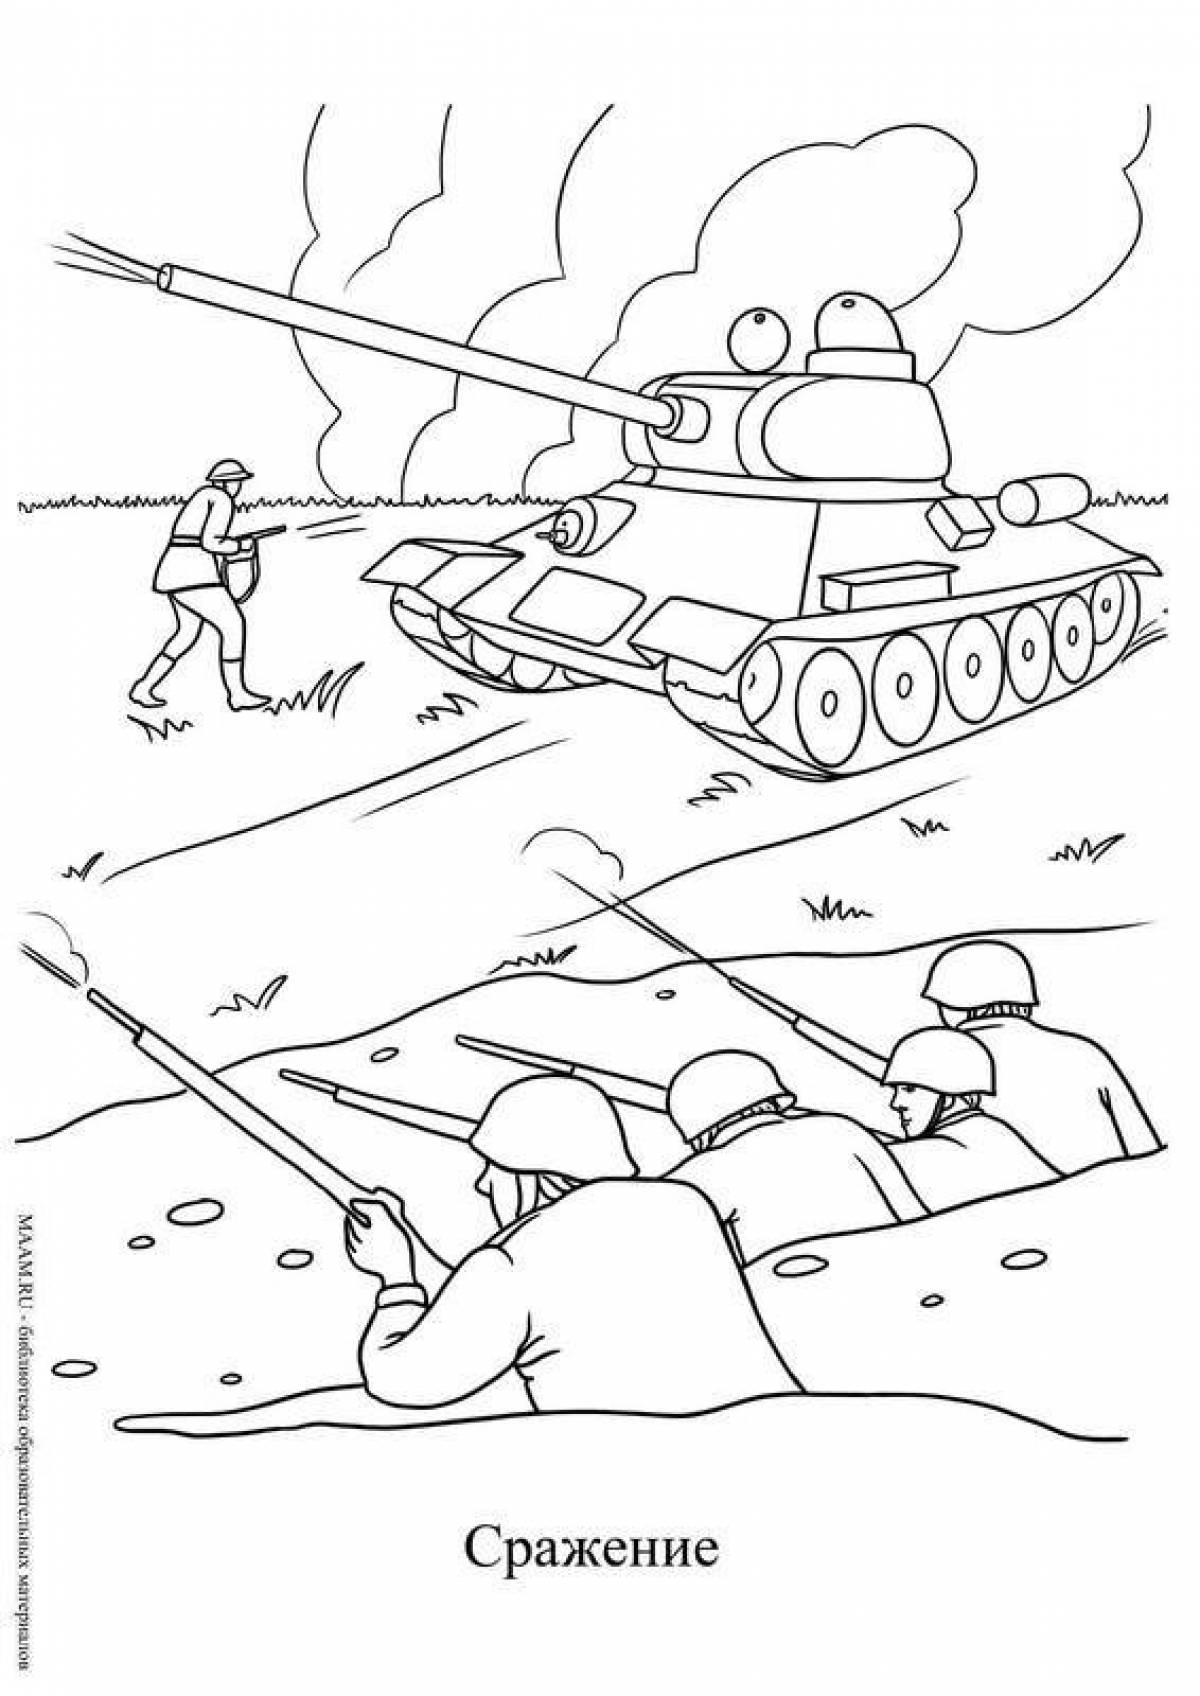 Coloring book grandeur battle of Stalingrad